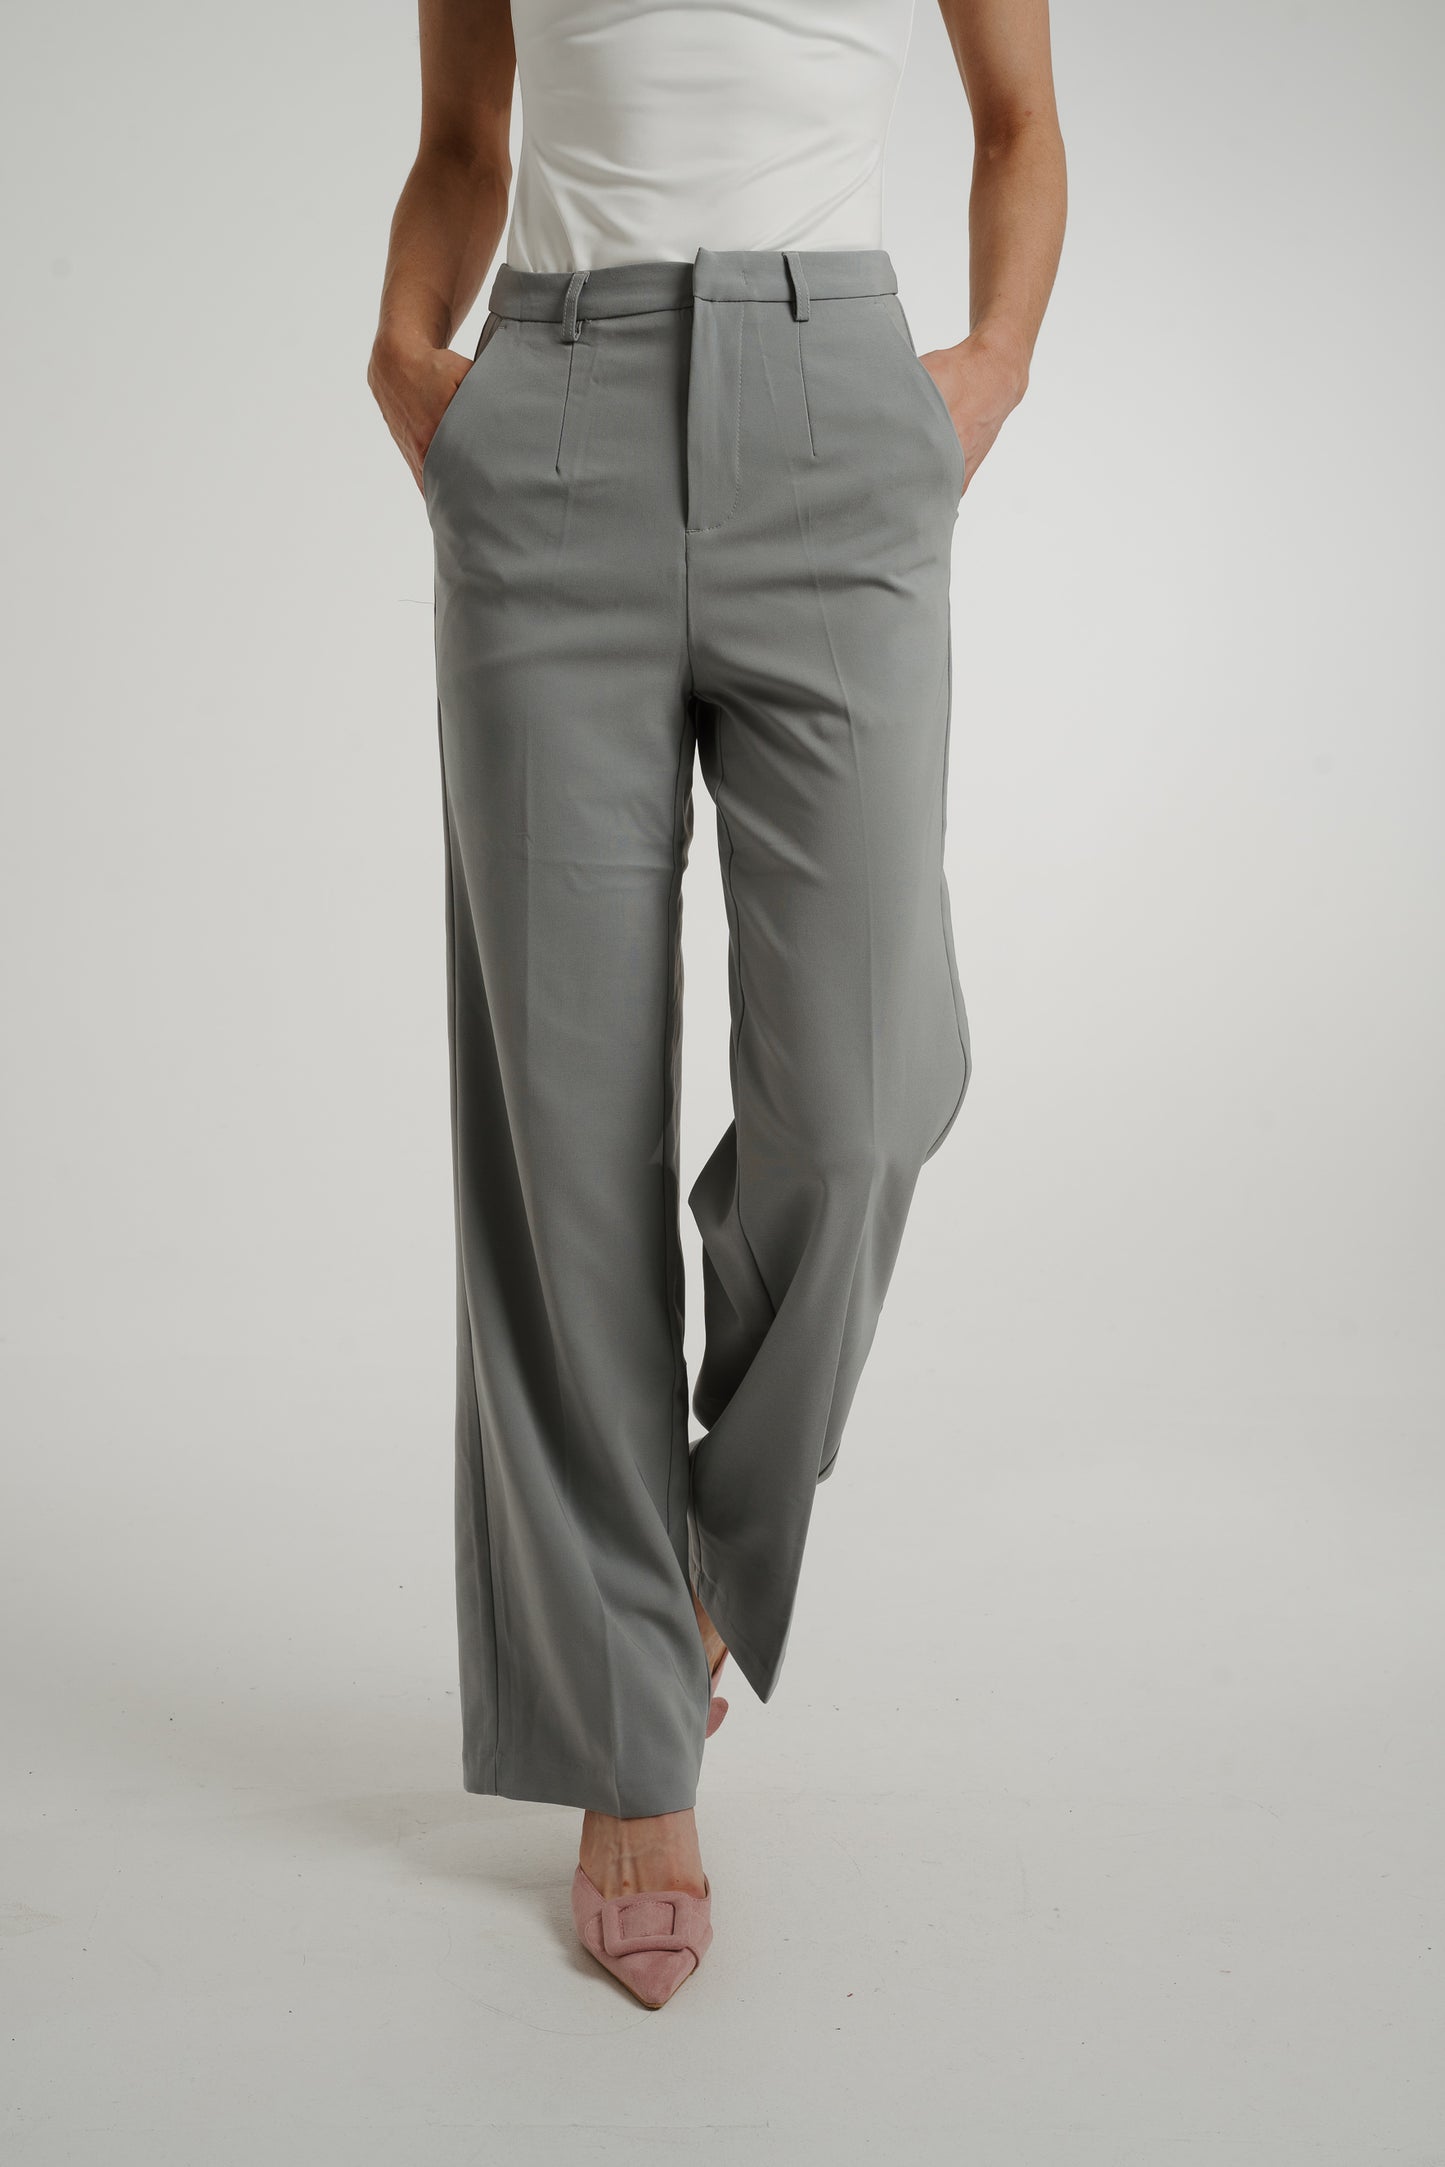 Freya Pleat Front Straight Leg Trouser In Grey